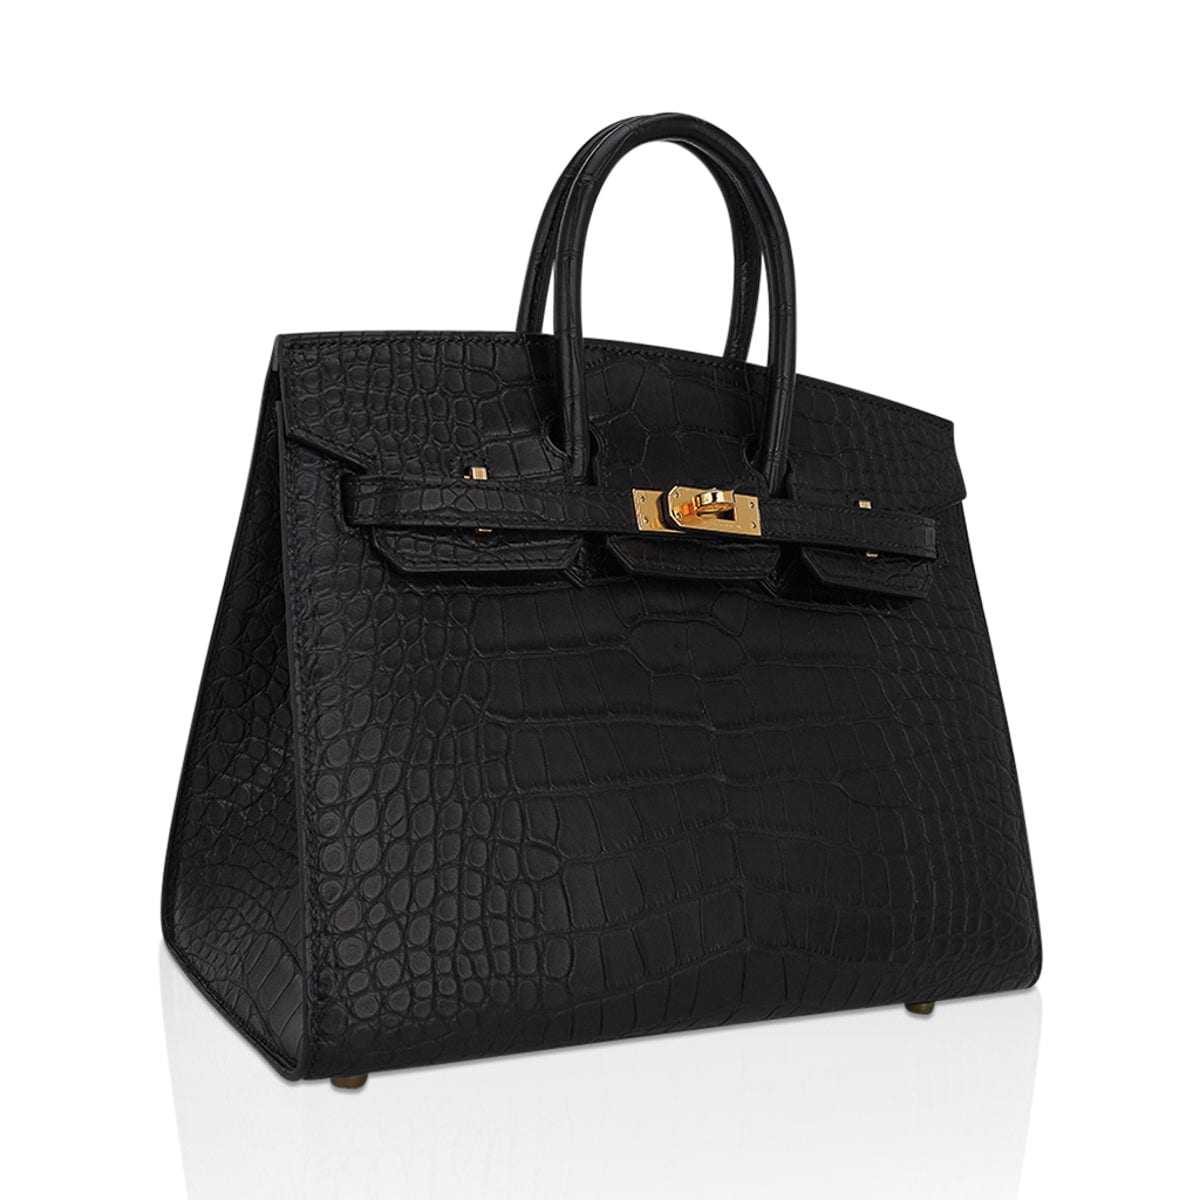 Hermes Birkin 25 Sellier Bag in Black Matte Alligator with Gold Hardware